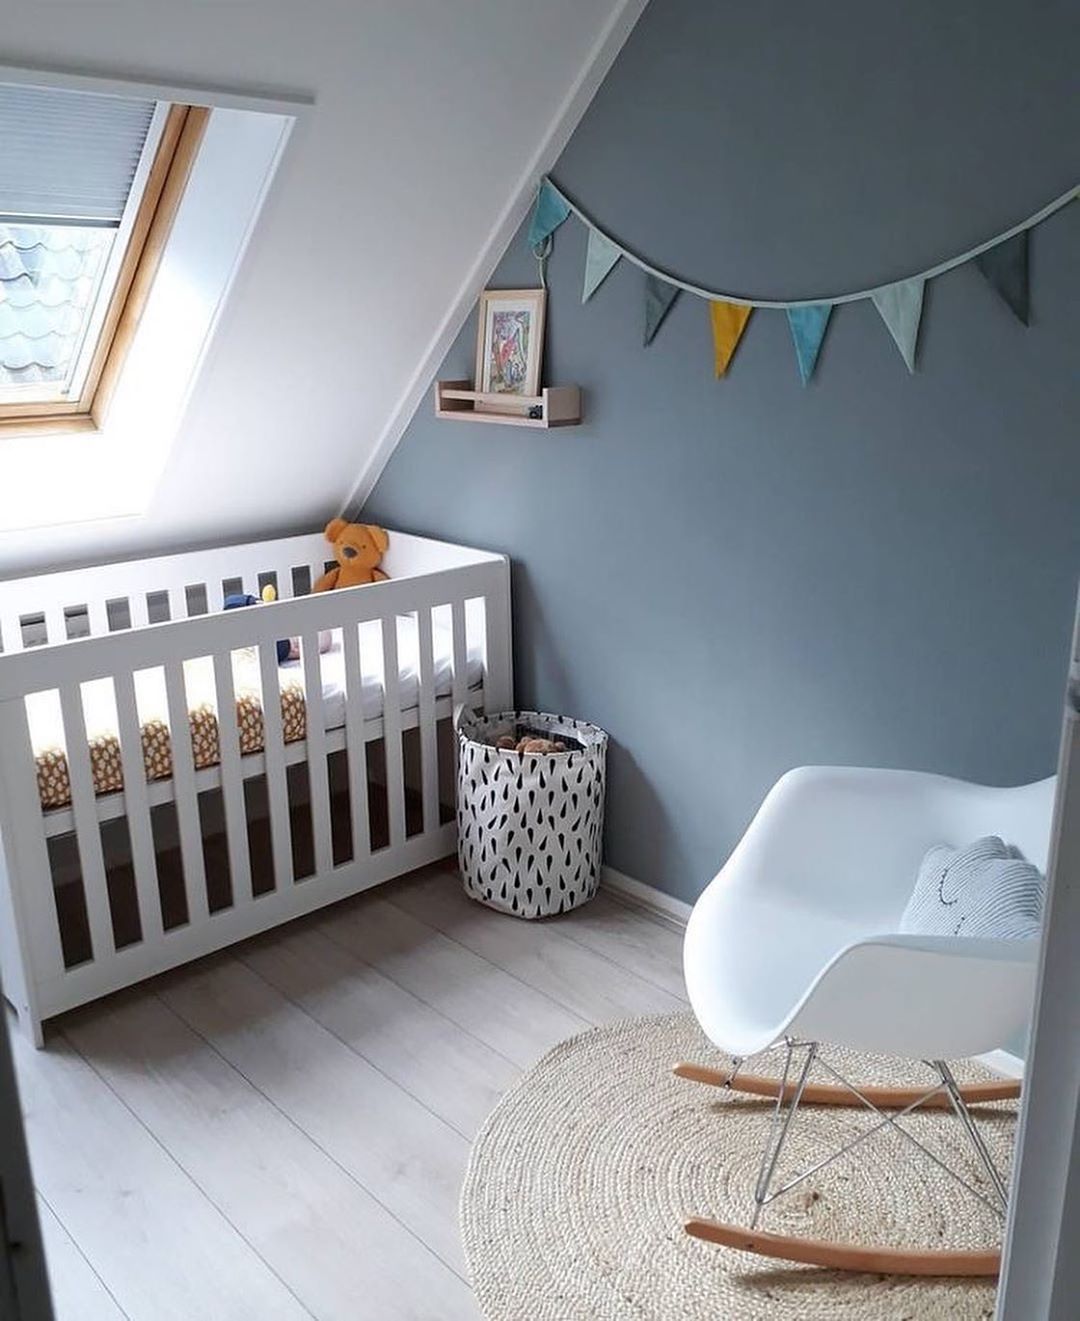 Baby nursery set up in attic space. Photo by Instagram user @potkrovlje.ba